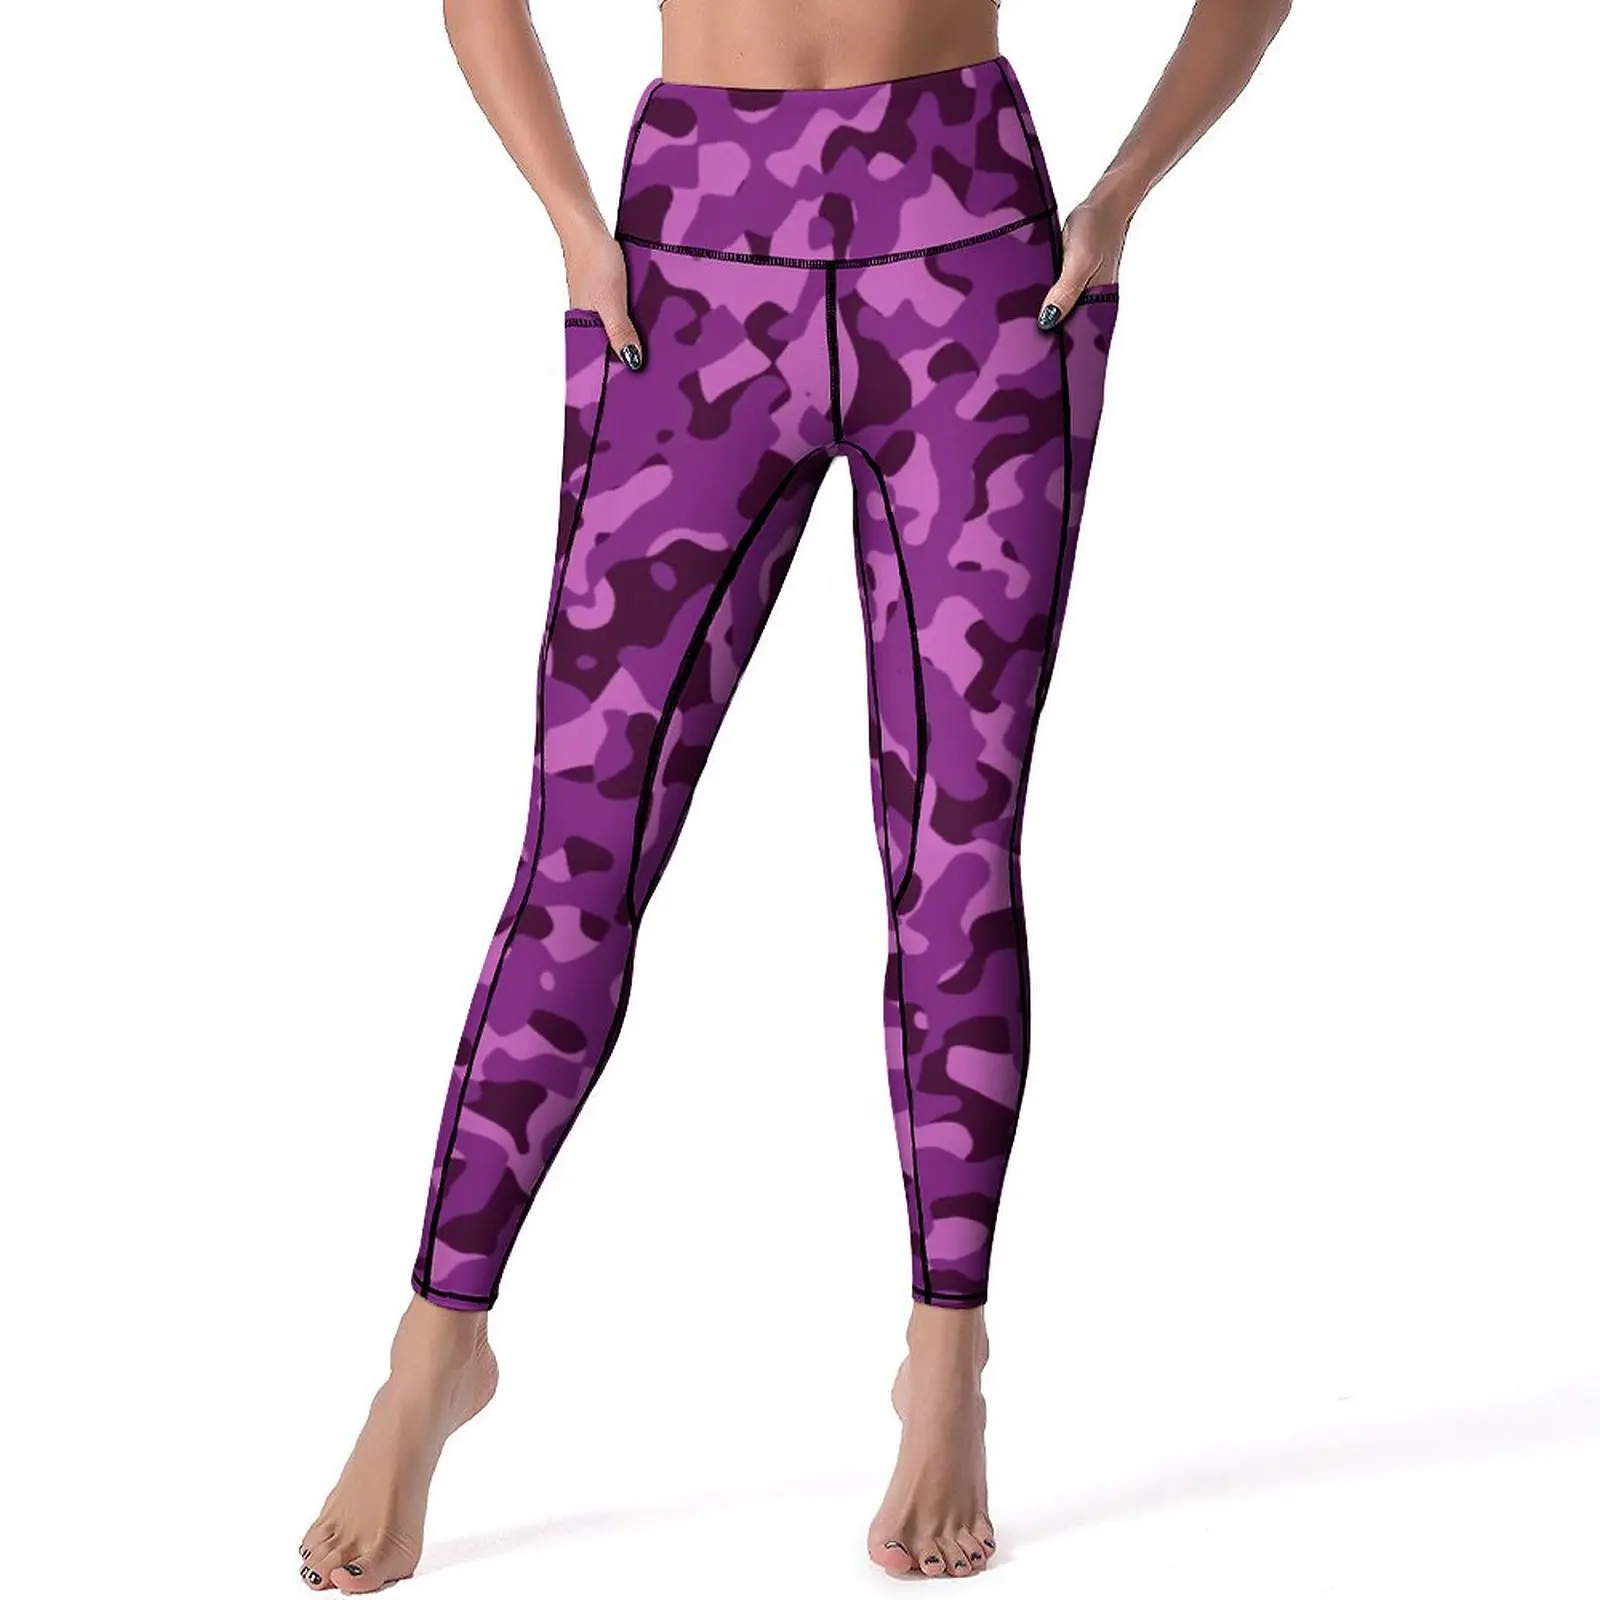 

Леггинсы с абстрактным камуфляжным принтом, пикантные фиолетовые камуфляжные штаны для спортзала и йоги, эластичные спортивные колготки с высокой талией, леггинсы с графикой в стиле ретро